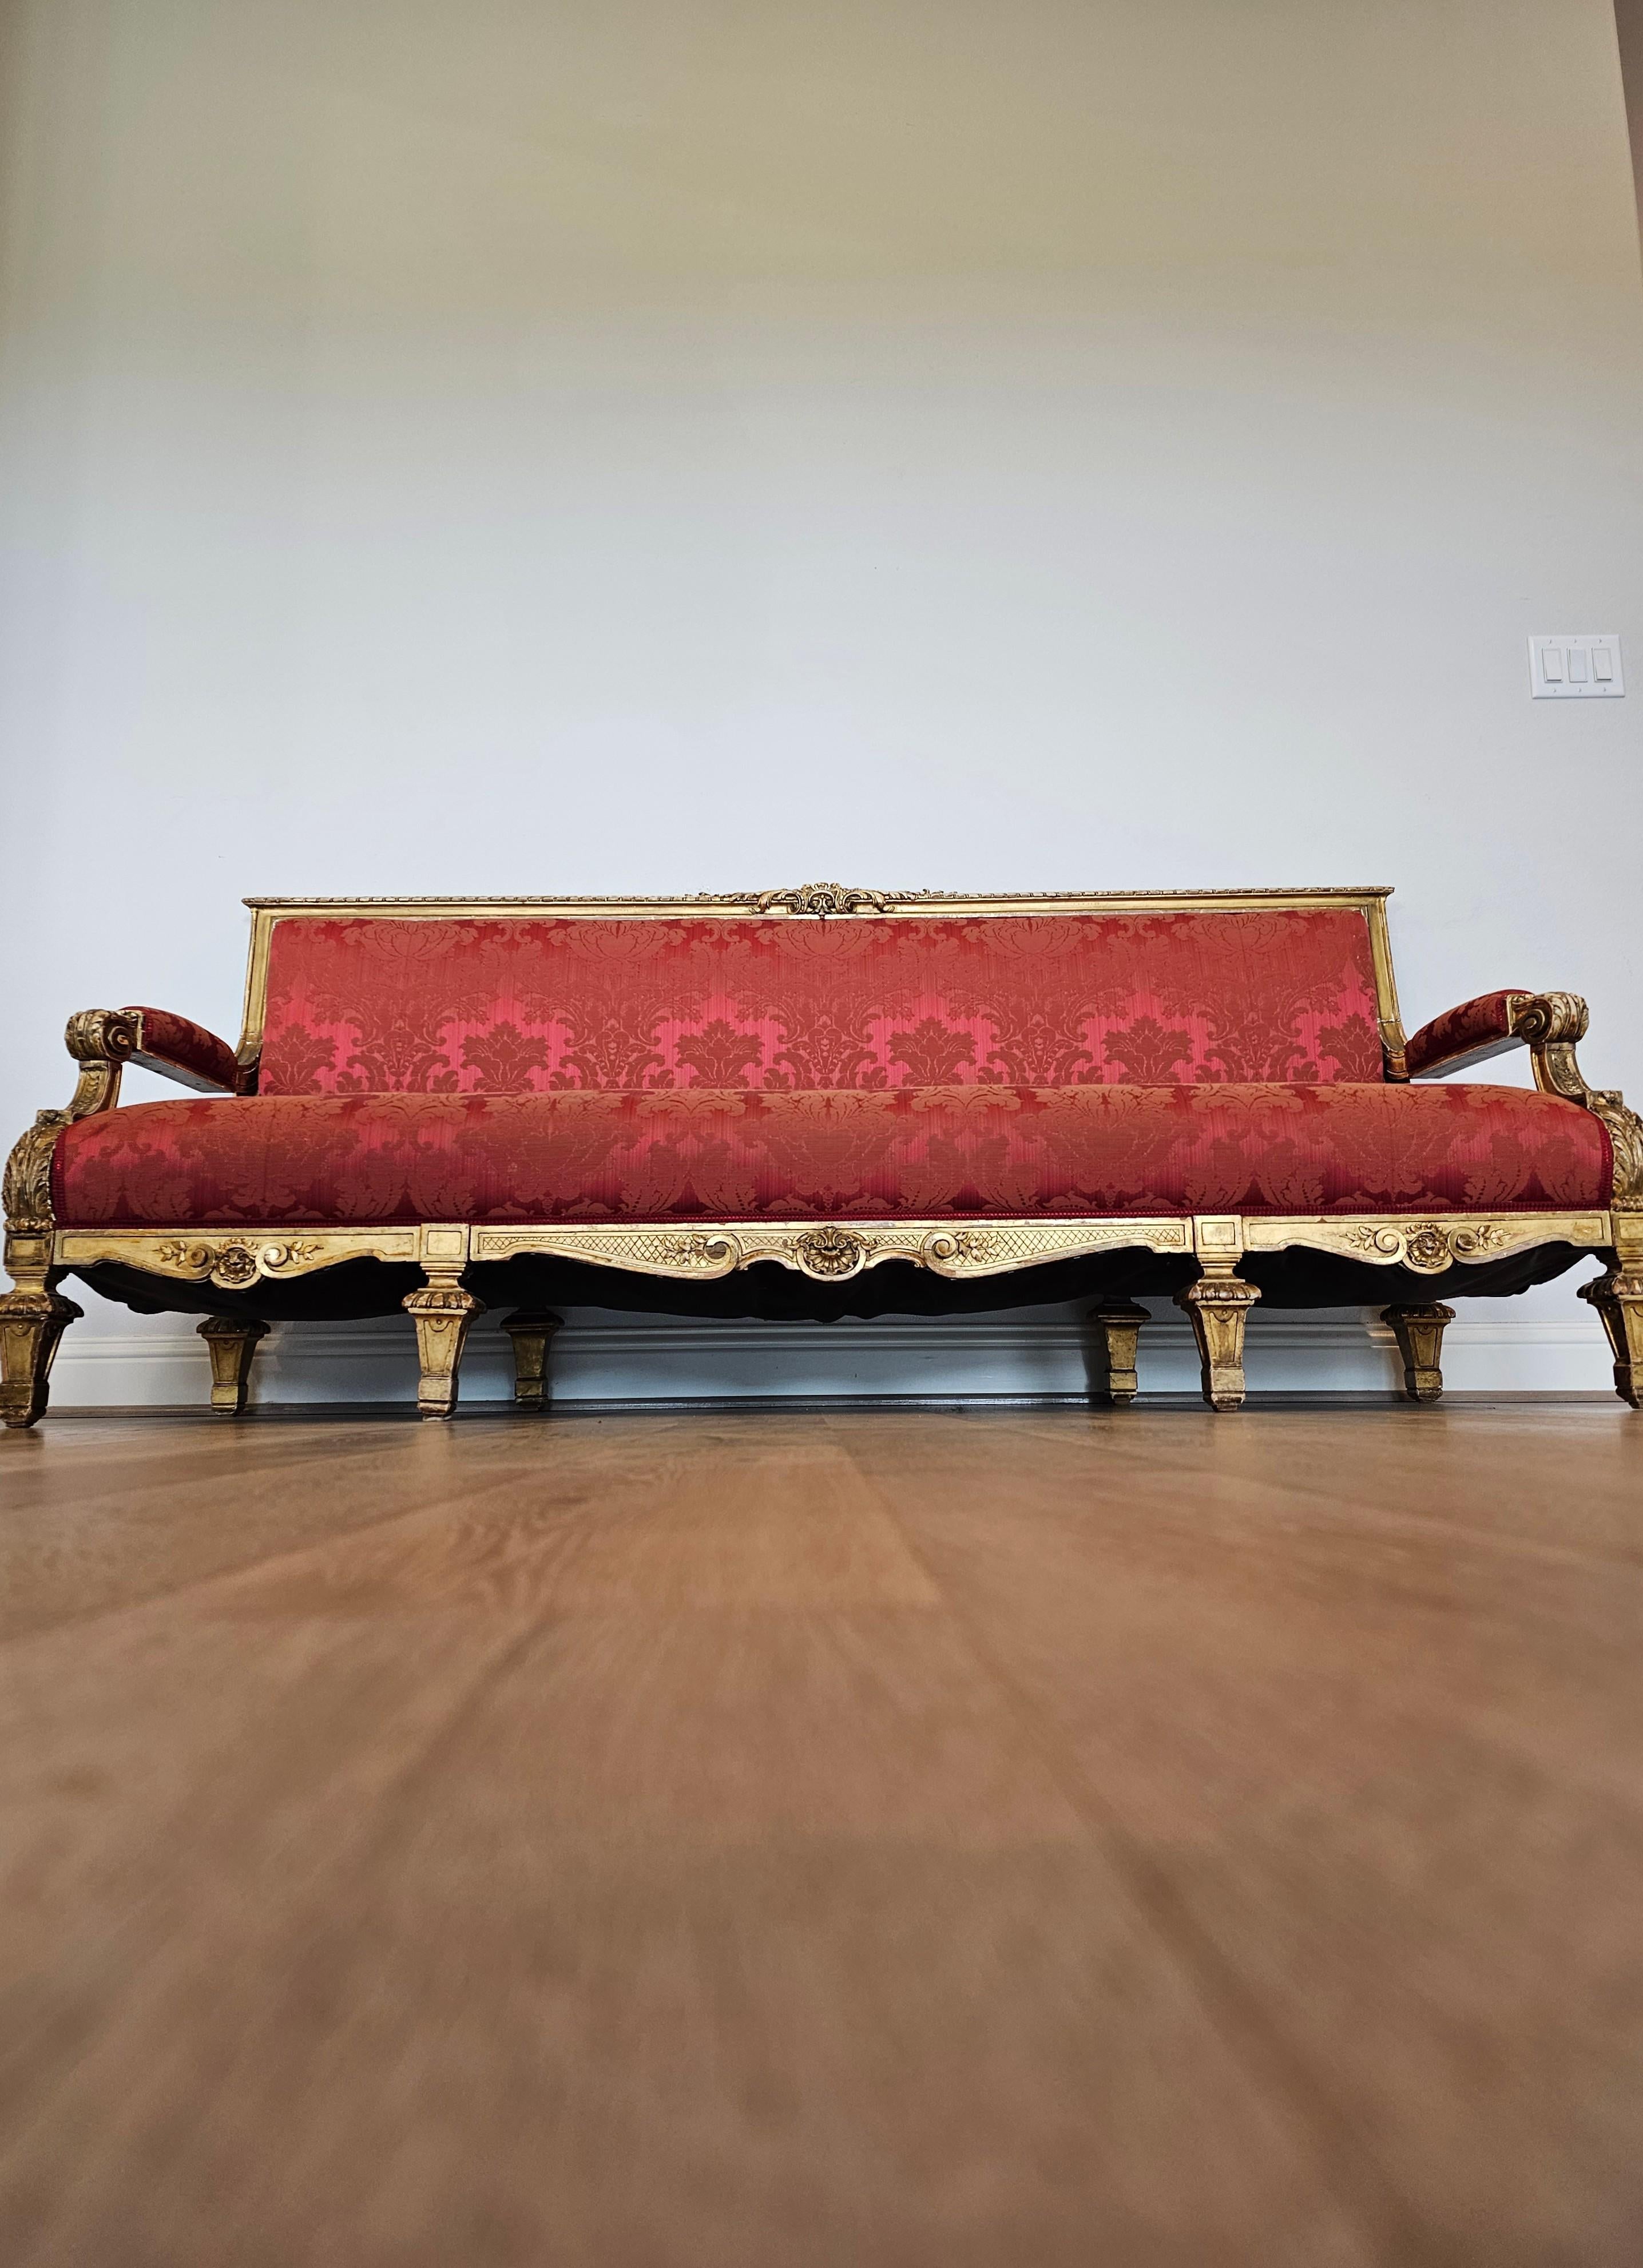 Verleihen Sie diesem beeindruckenden Viersitzer-Sofa aus vergoldetem französischem Holz aus der Belle Époque einen Hauch von raffinierter Eleganz, zeitlosem Luxus und romantischer Wärme. 

Exquisit handgefertigt in Frankreich im späten 19. /